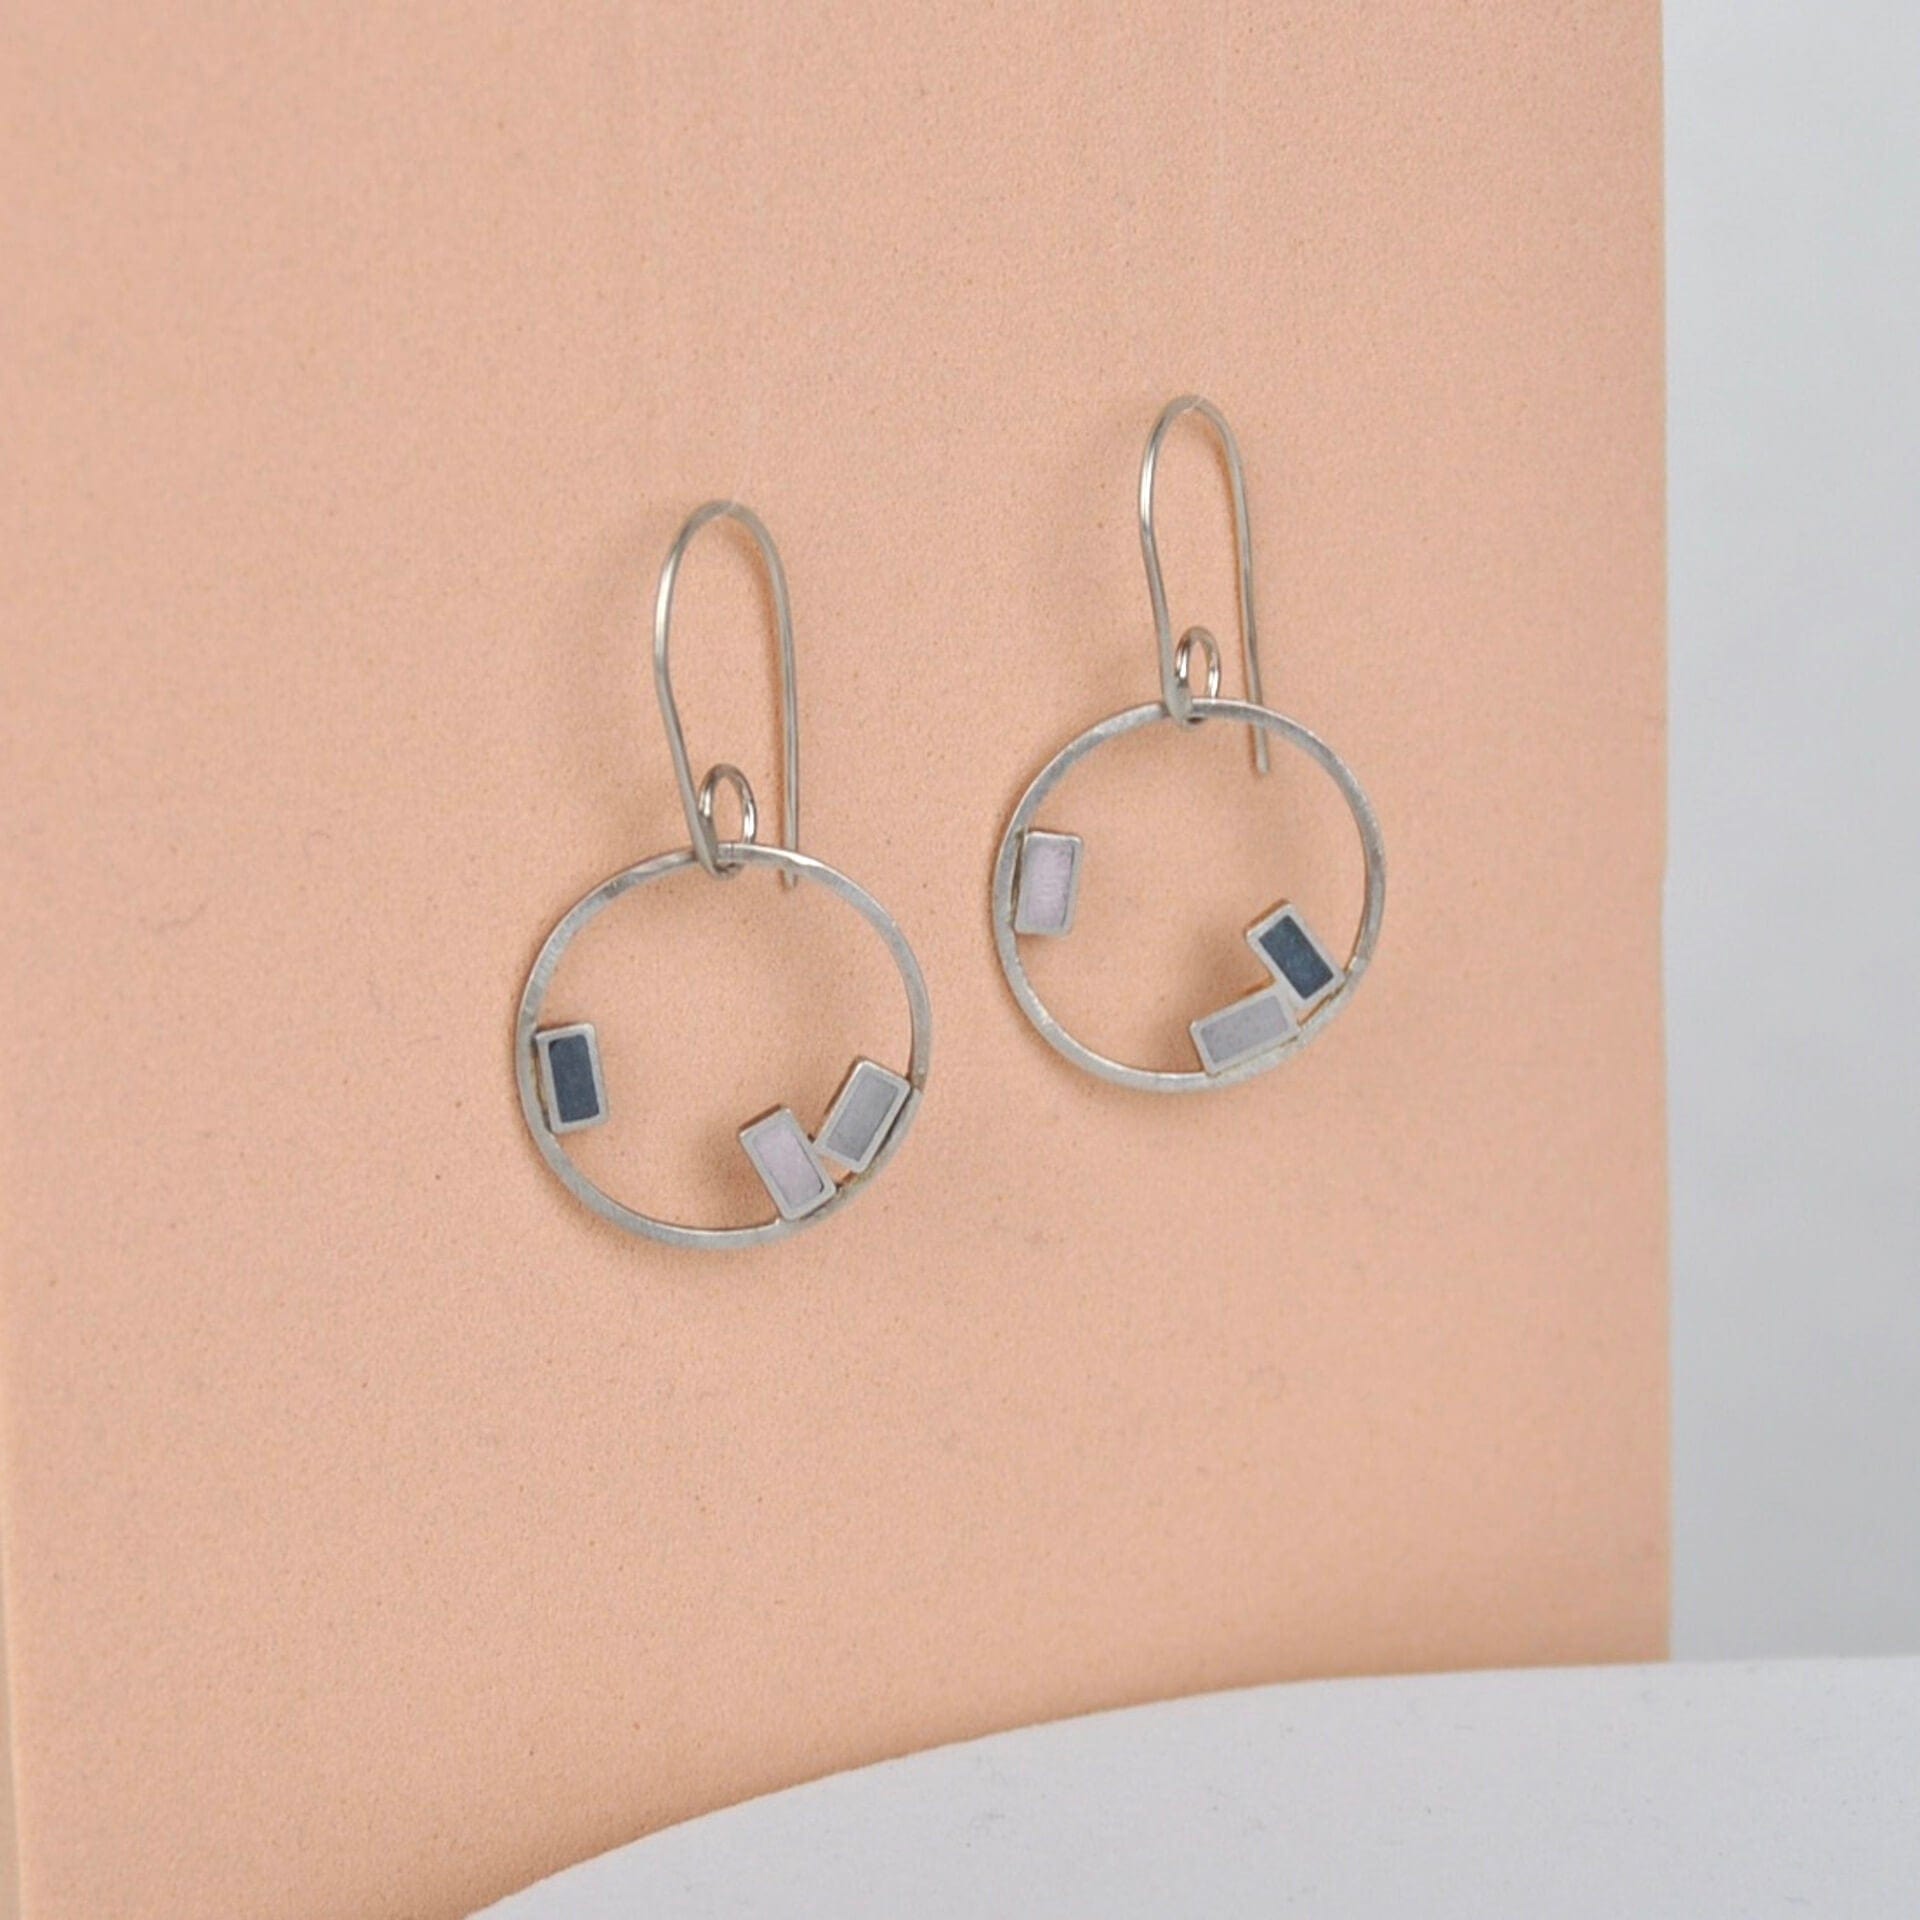 Clare Lloyd Earrings Pink/Light Grey/Dark Grey rectangles Small Inside Dot Hoop Earring